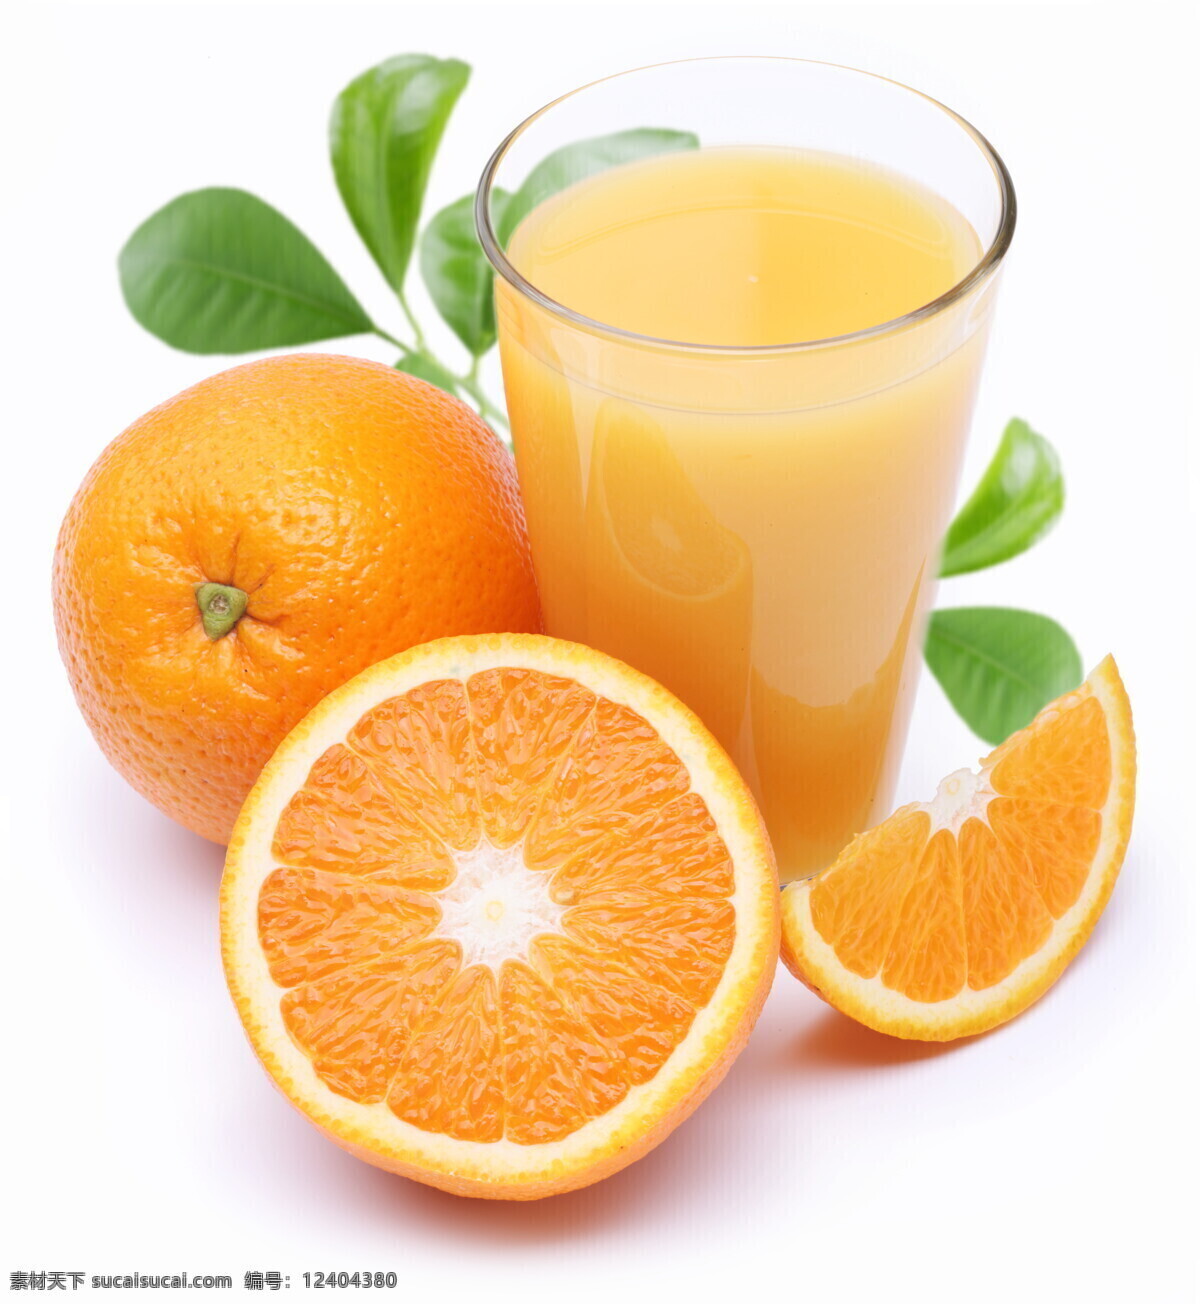 橙汁 果汁 鲜榨果汁 桔子汁 芒果汁 营养美味 水果 果汁饮料 餐饮美食 饮料酒水